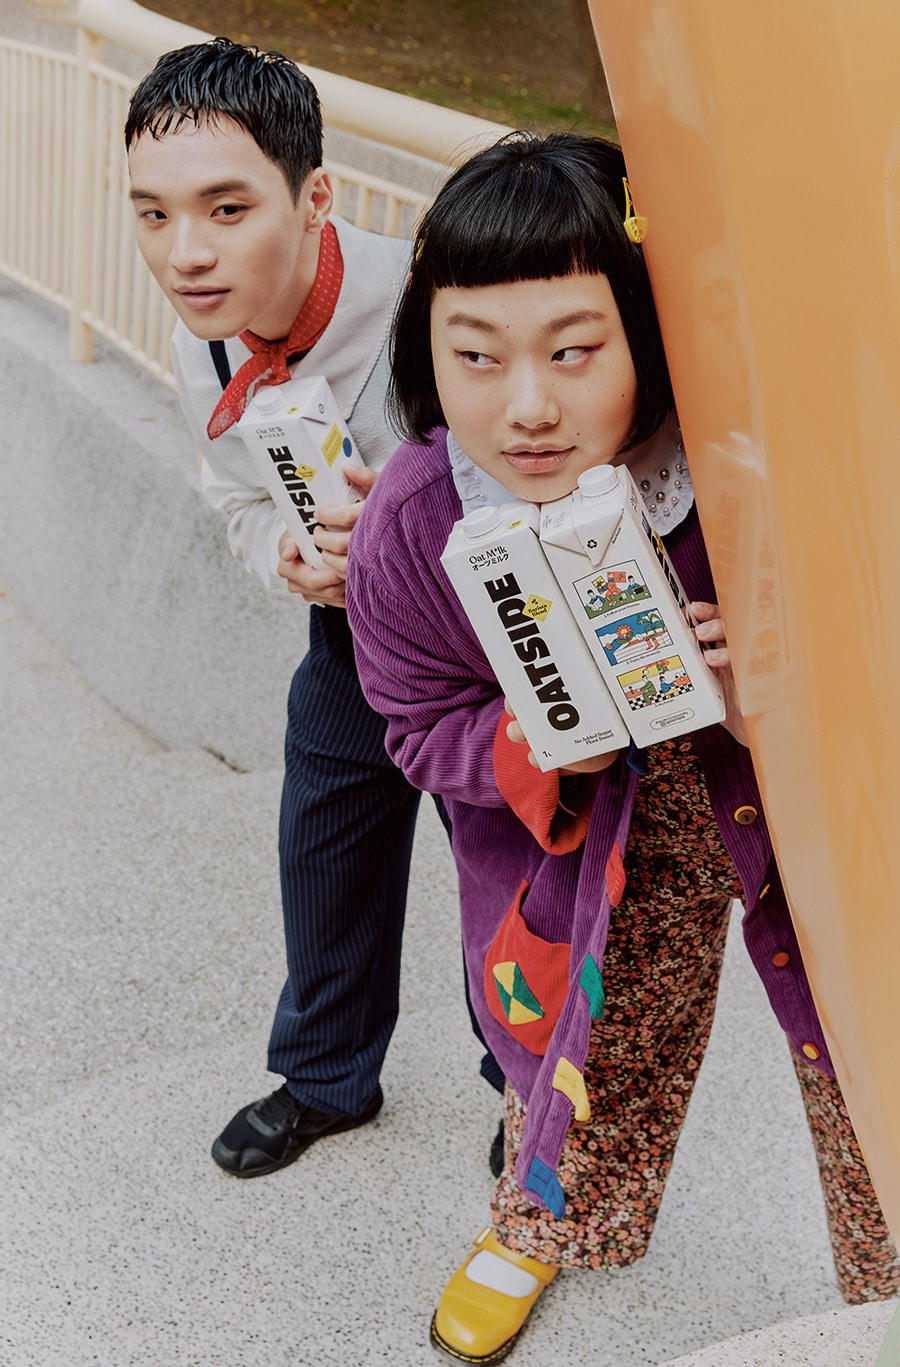 Werbefoto für die Hafermilch Oatside. Zwei Personen halten mehrere Tetrapacks der Hafermilch in der Hand.